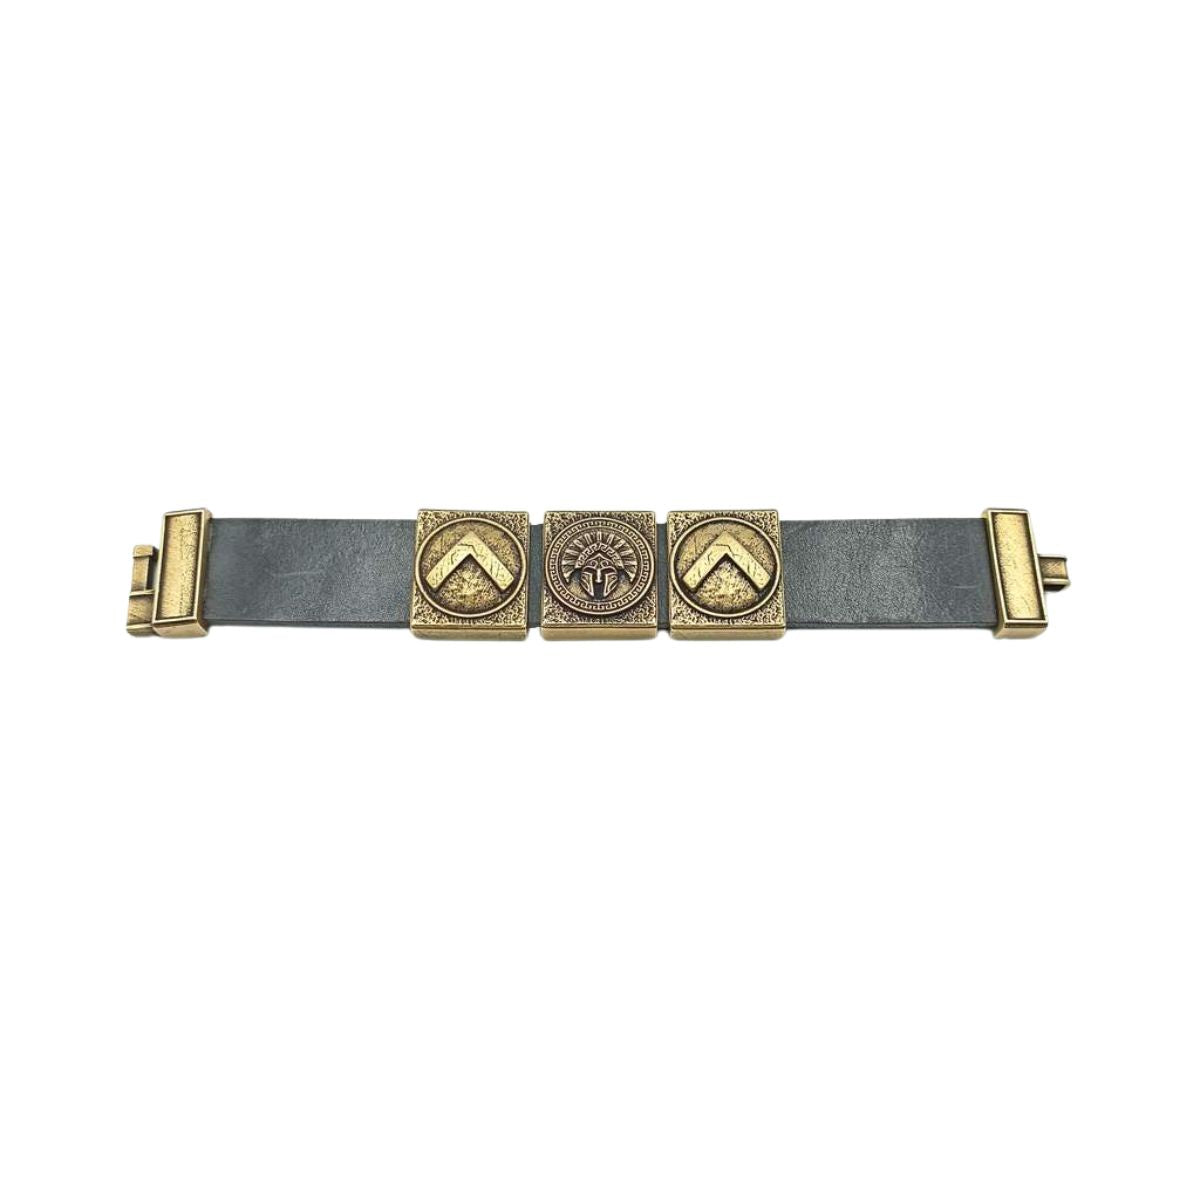 Spartan leather cuff bracelet   